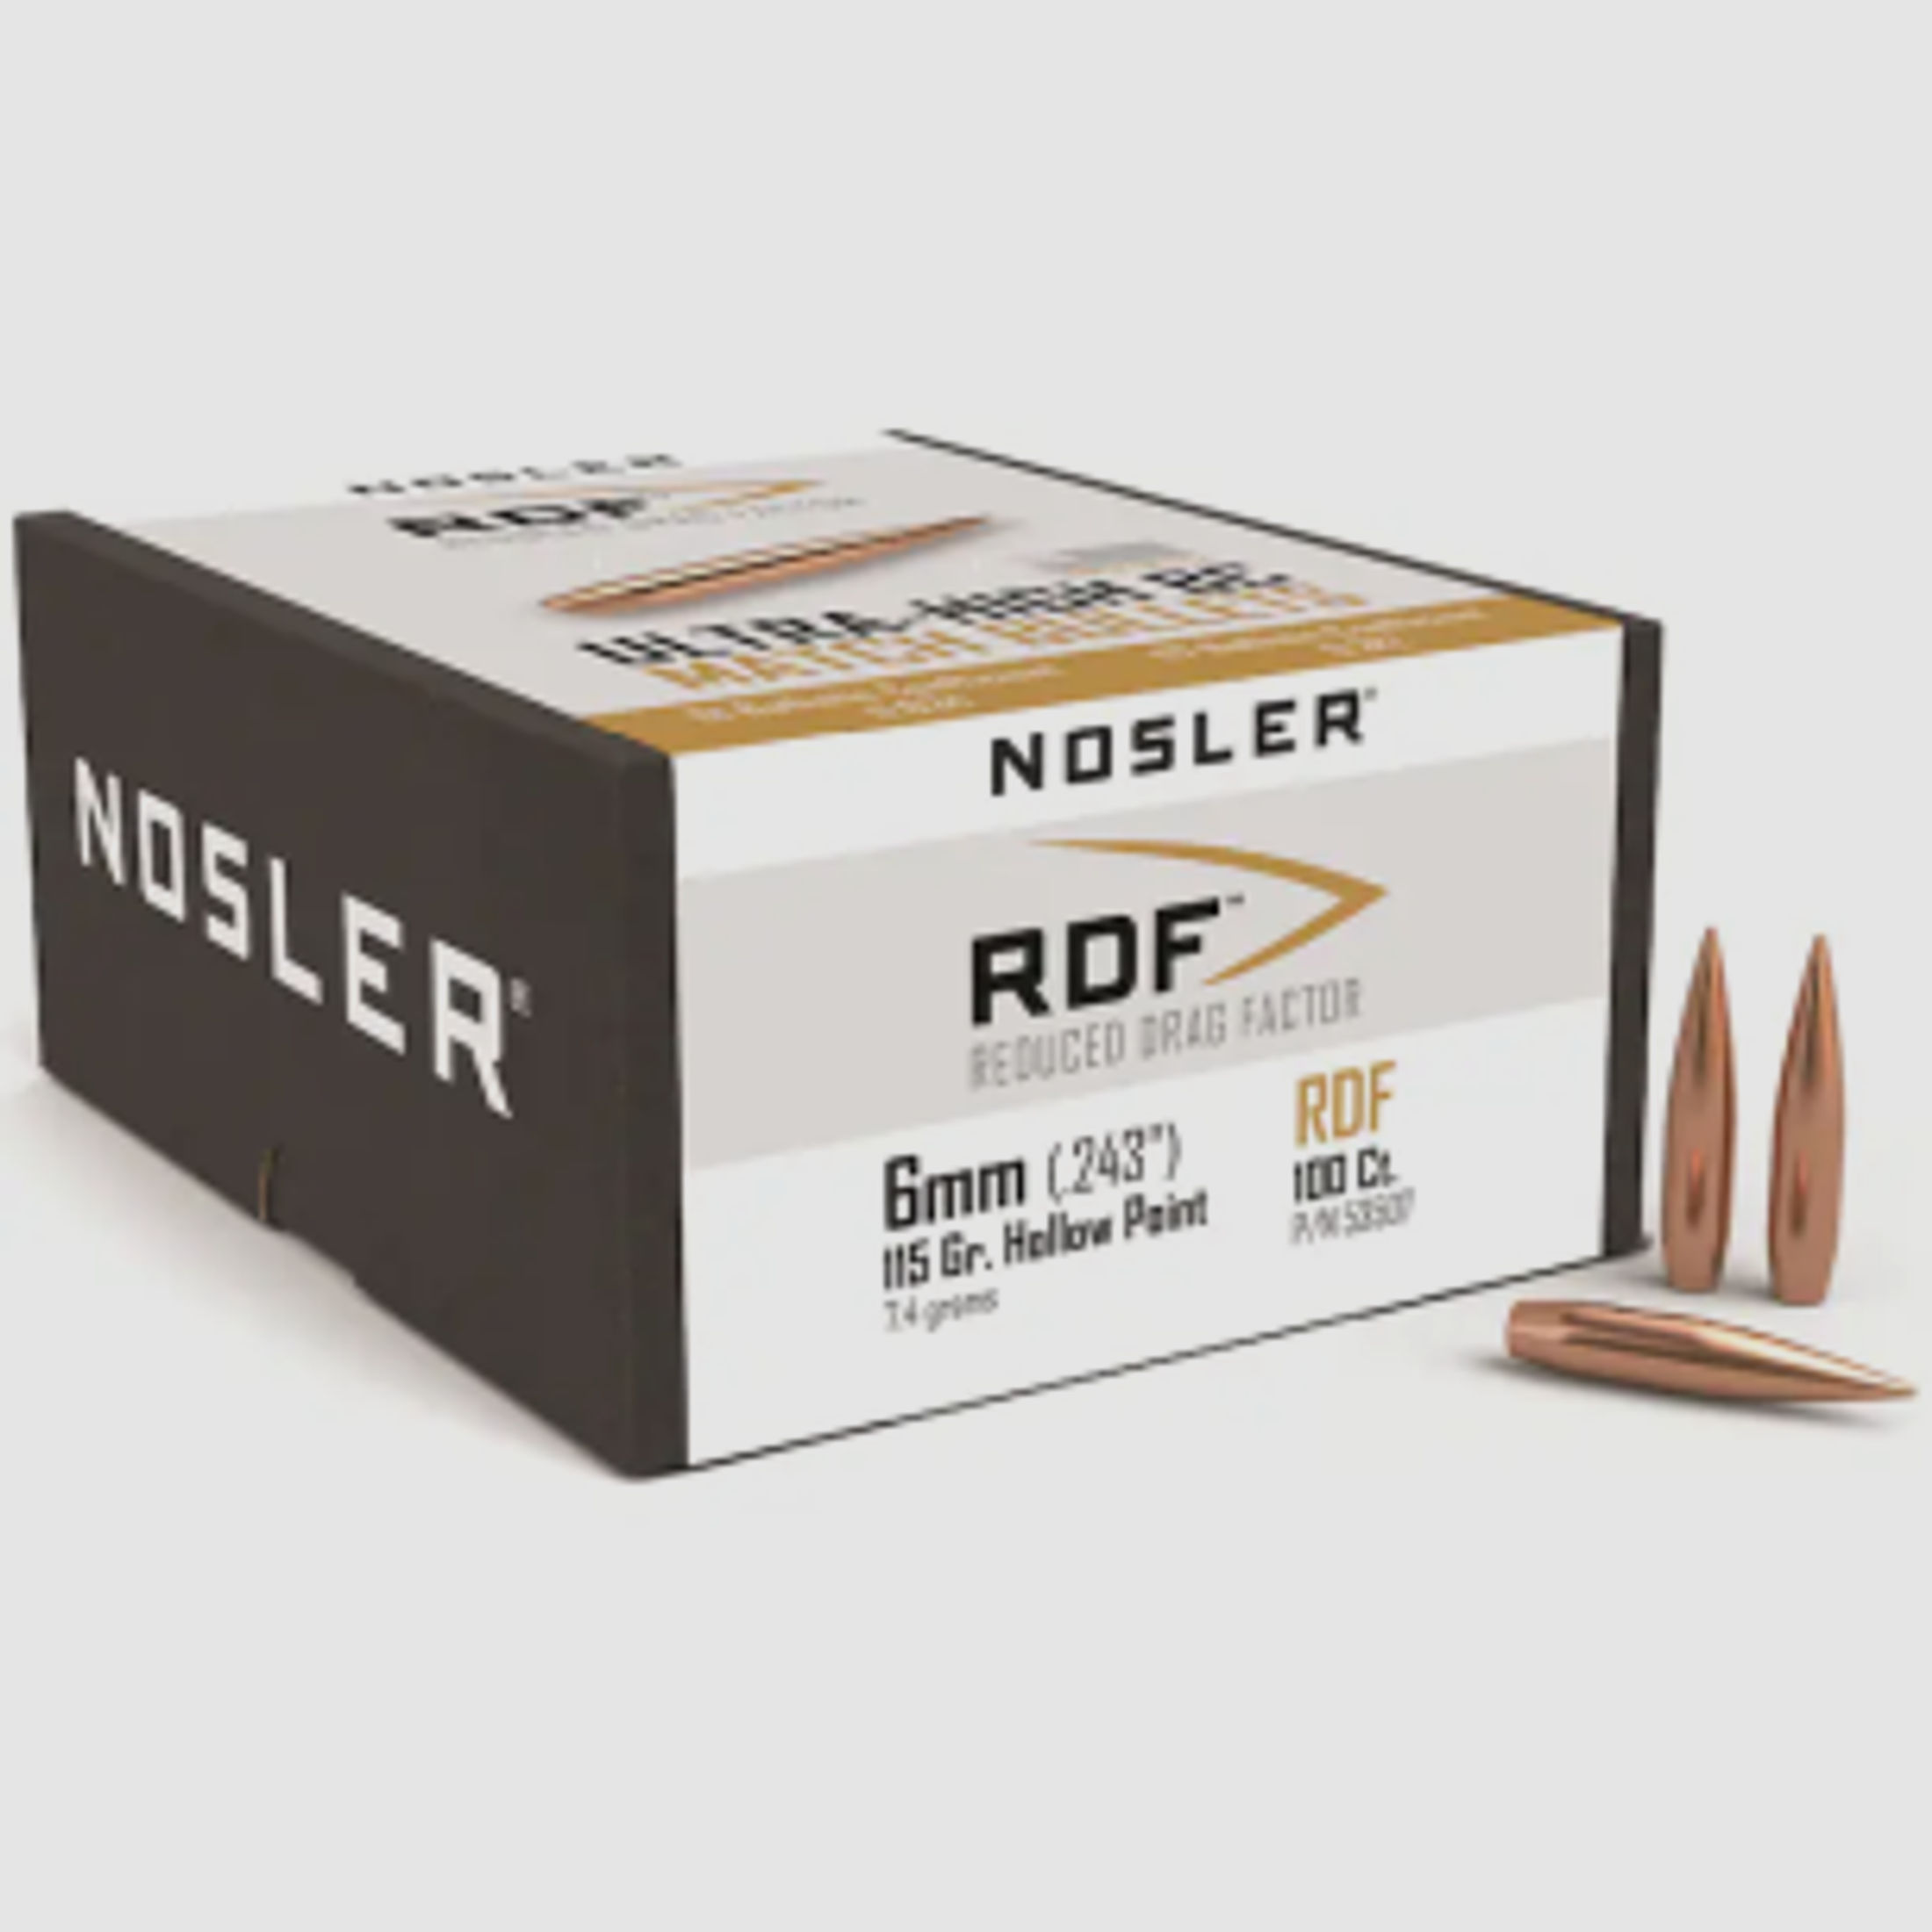 Nosler Geschoss 6mm/.243 RDF 115GR HPBT 100 Stück